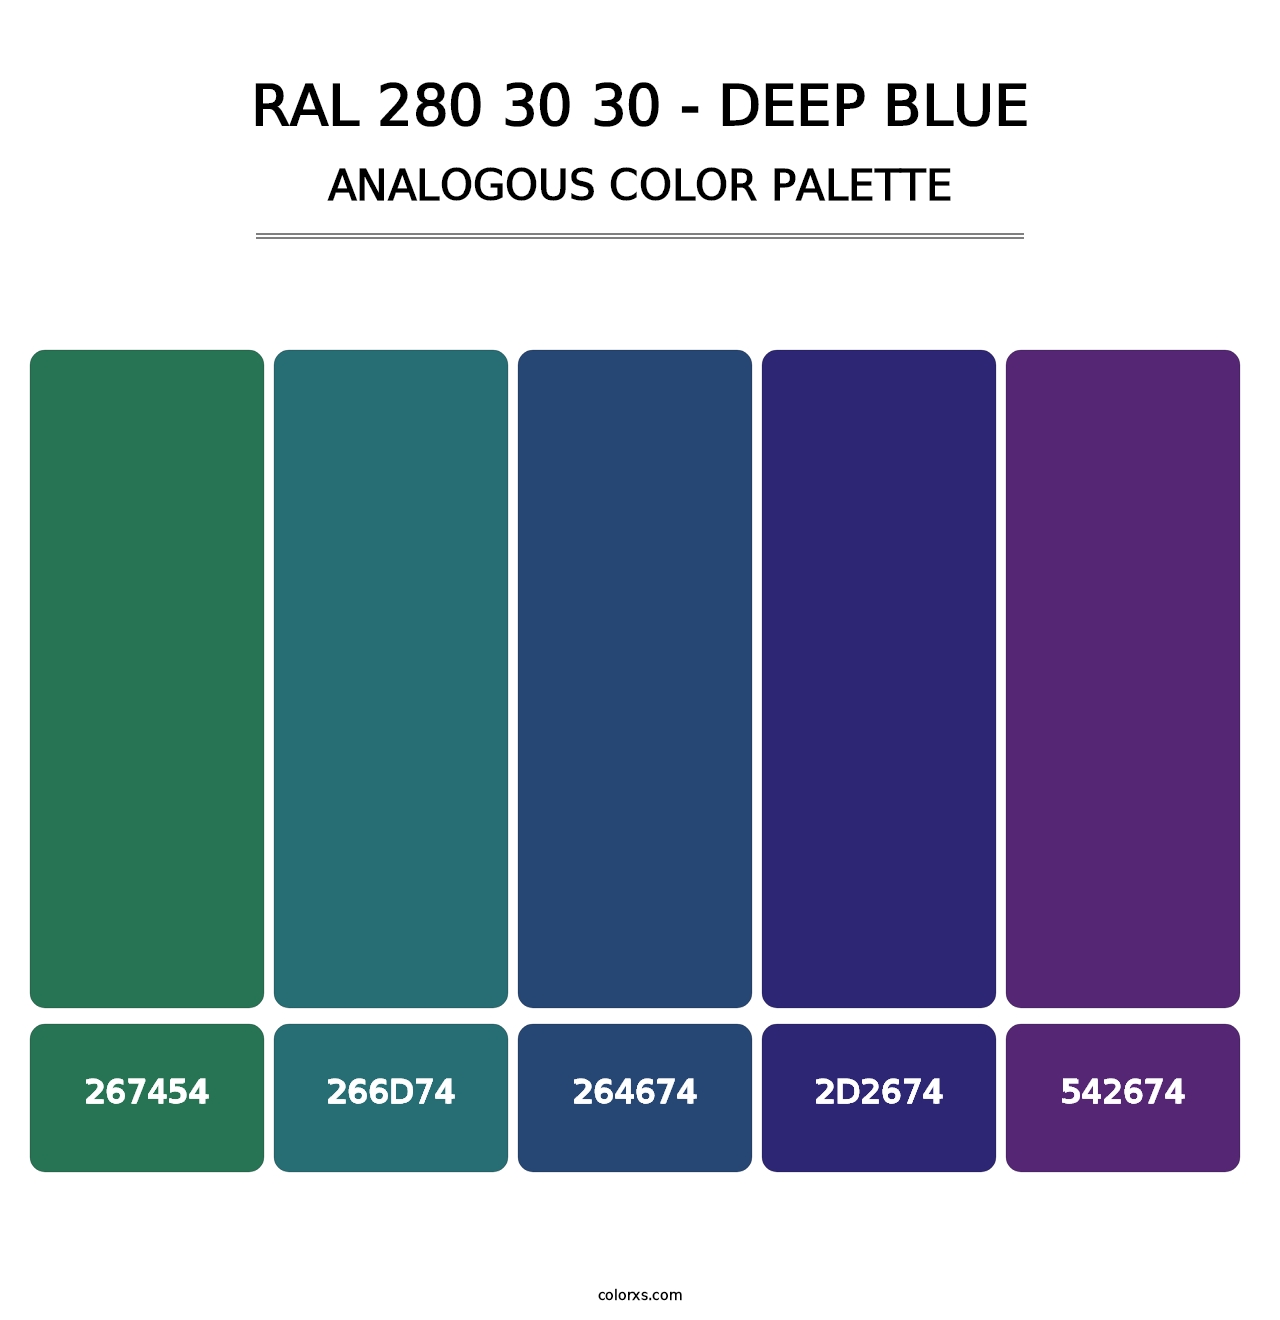 RAL 280 30 30 - Deep Blue - Analogous Color Palette